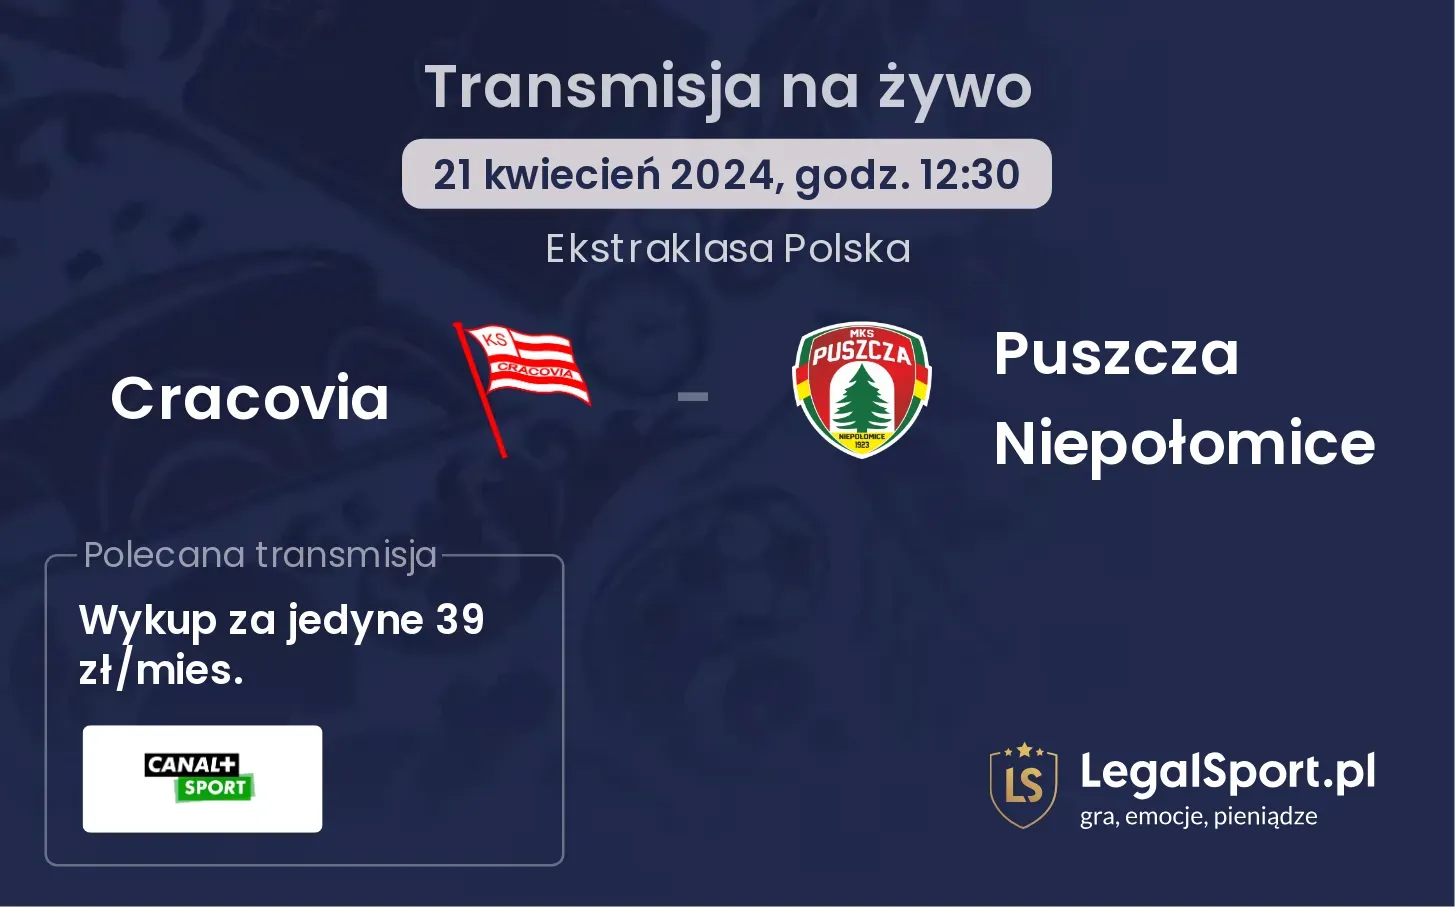 Cracovia - Puszcza Niepołomice transmisja na żywo